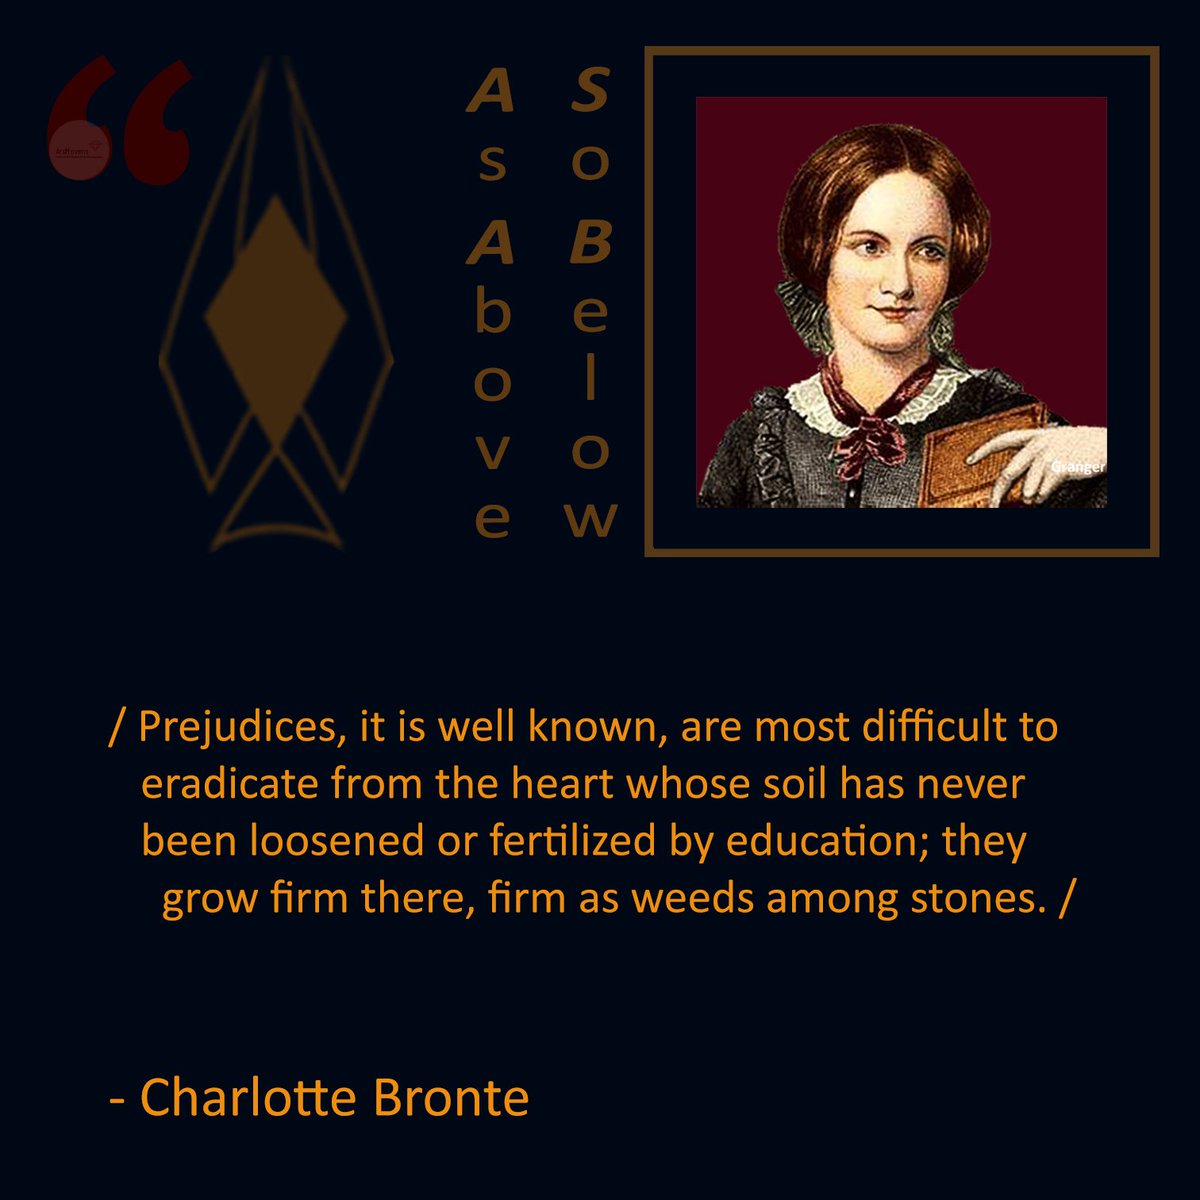 #CharlotteBrontë #Quotes #WomenAuthors #Literature #Writers 🏴󠁧󠁢󠁥󠁮󠁧󠁿🇬🇧